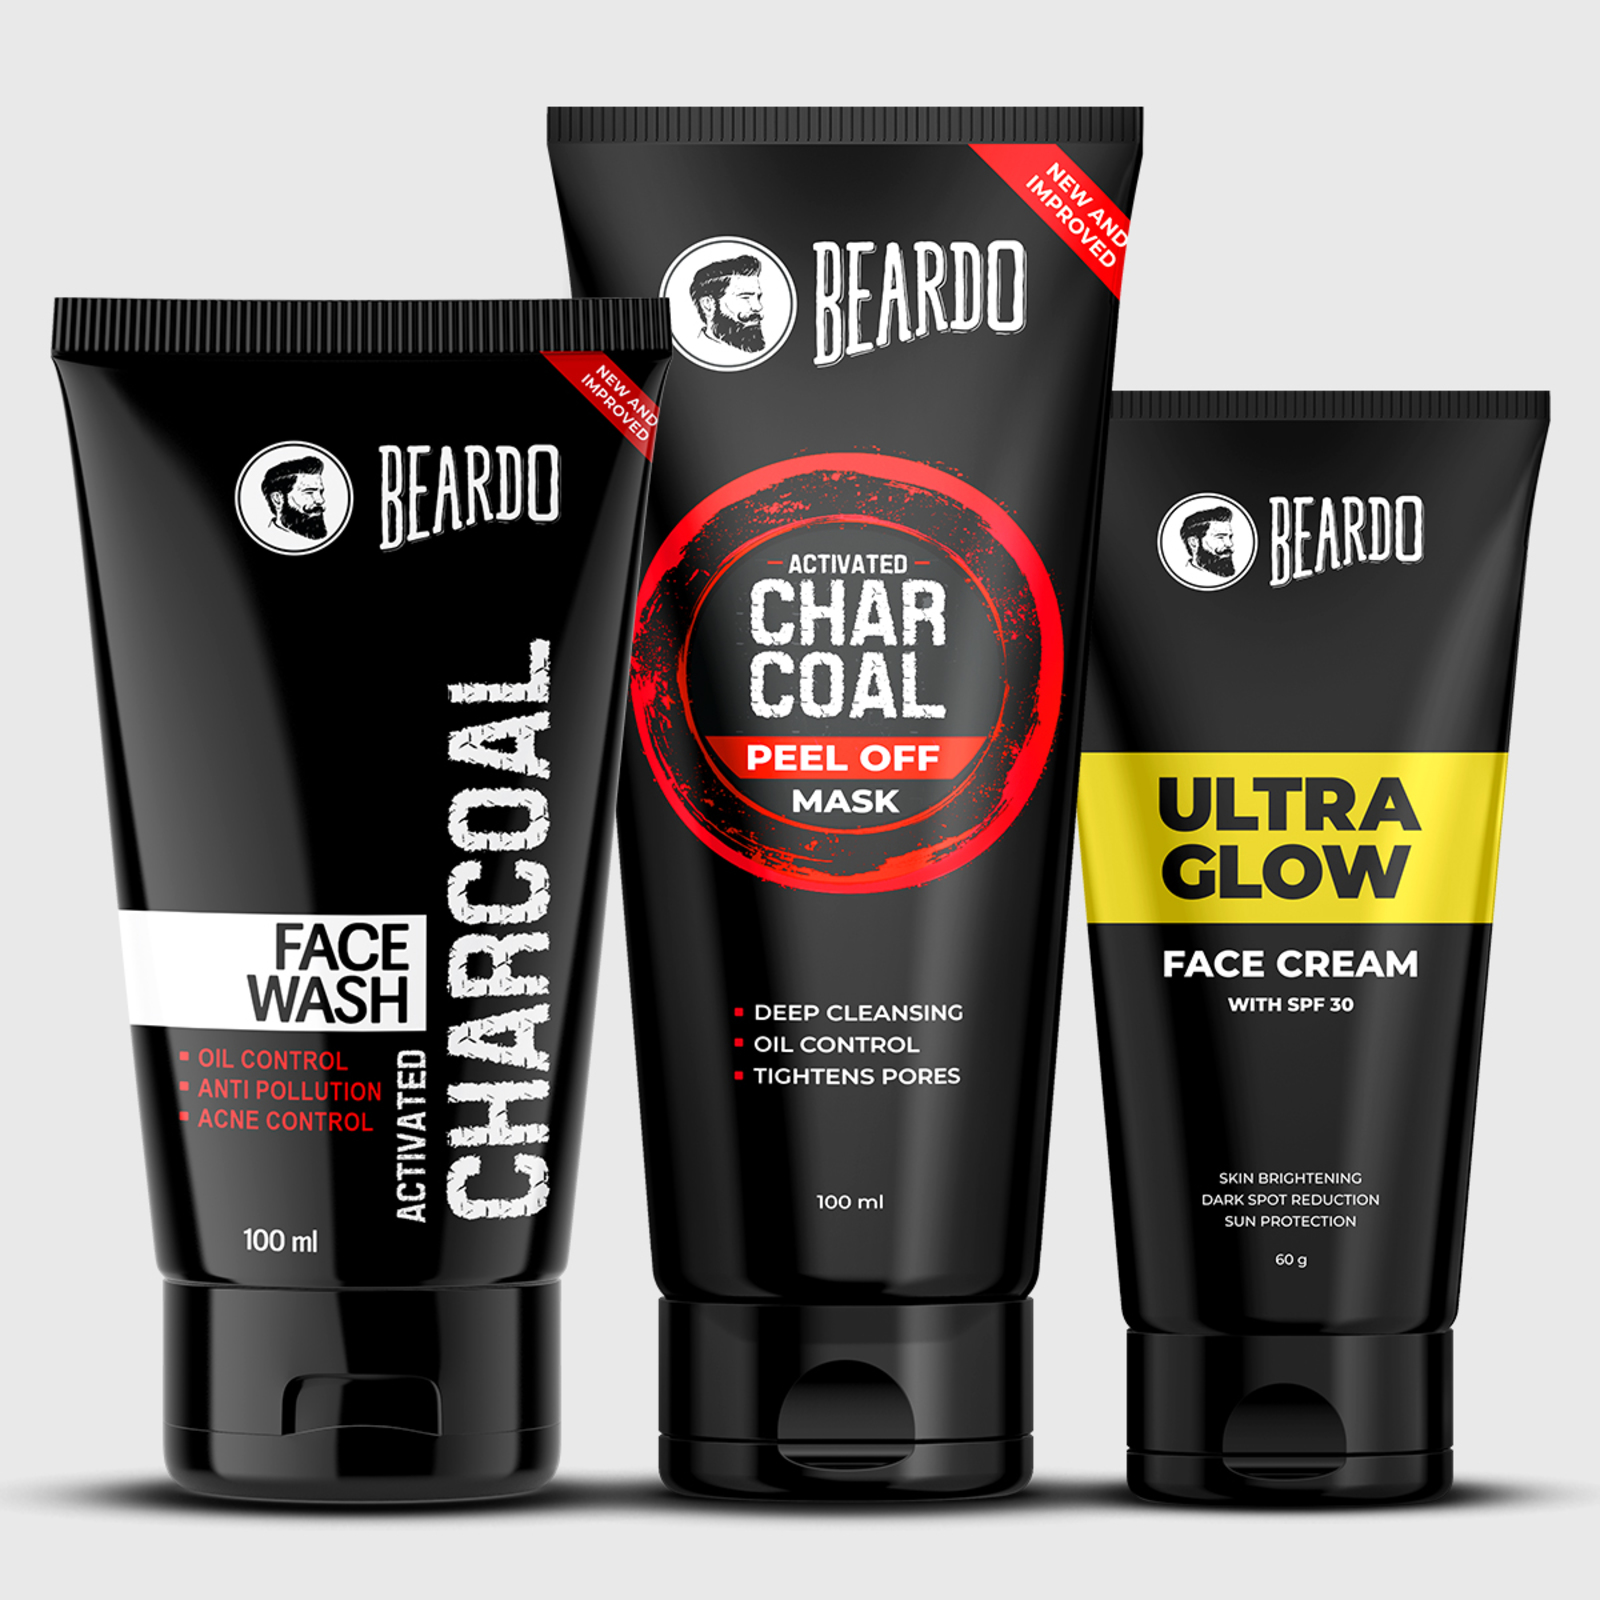 Beardo Insta-bright Face Combo coupon code